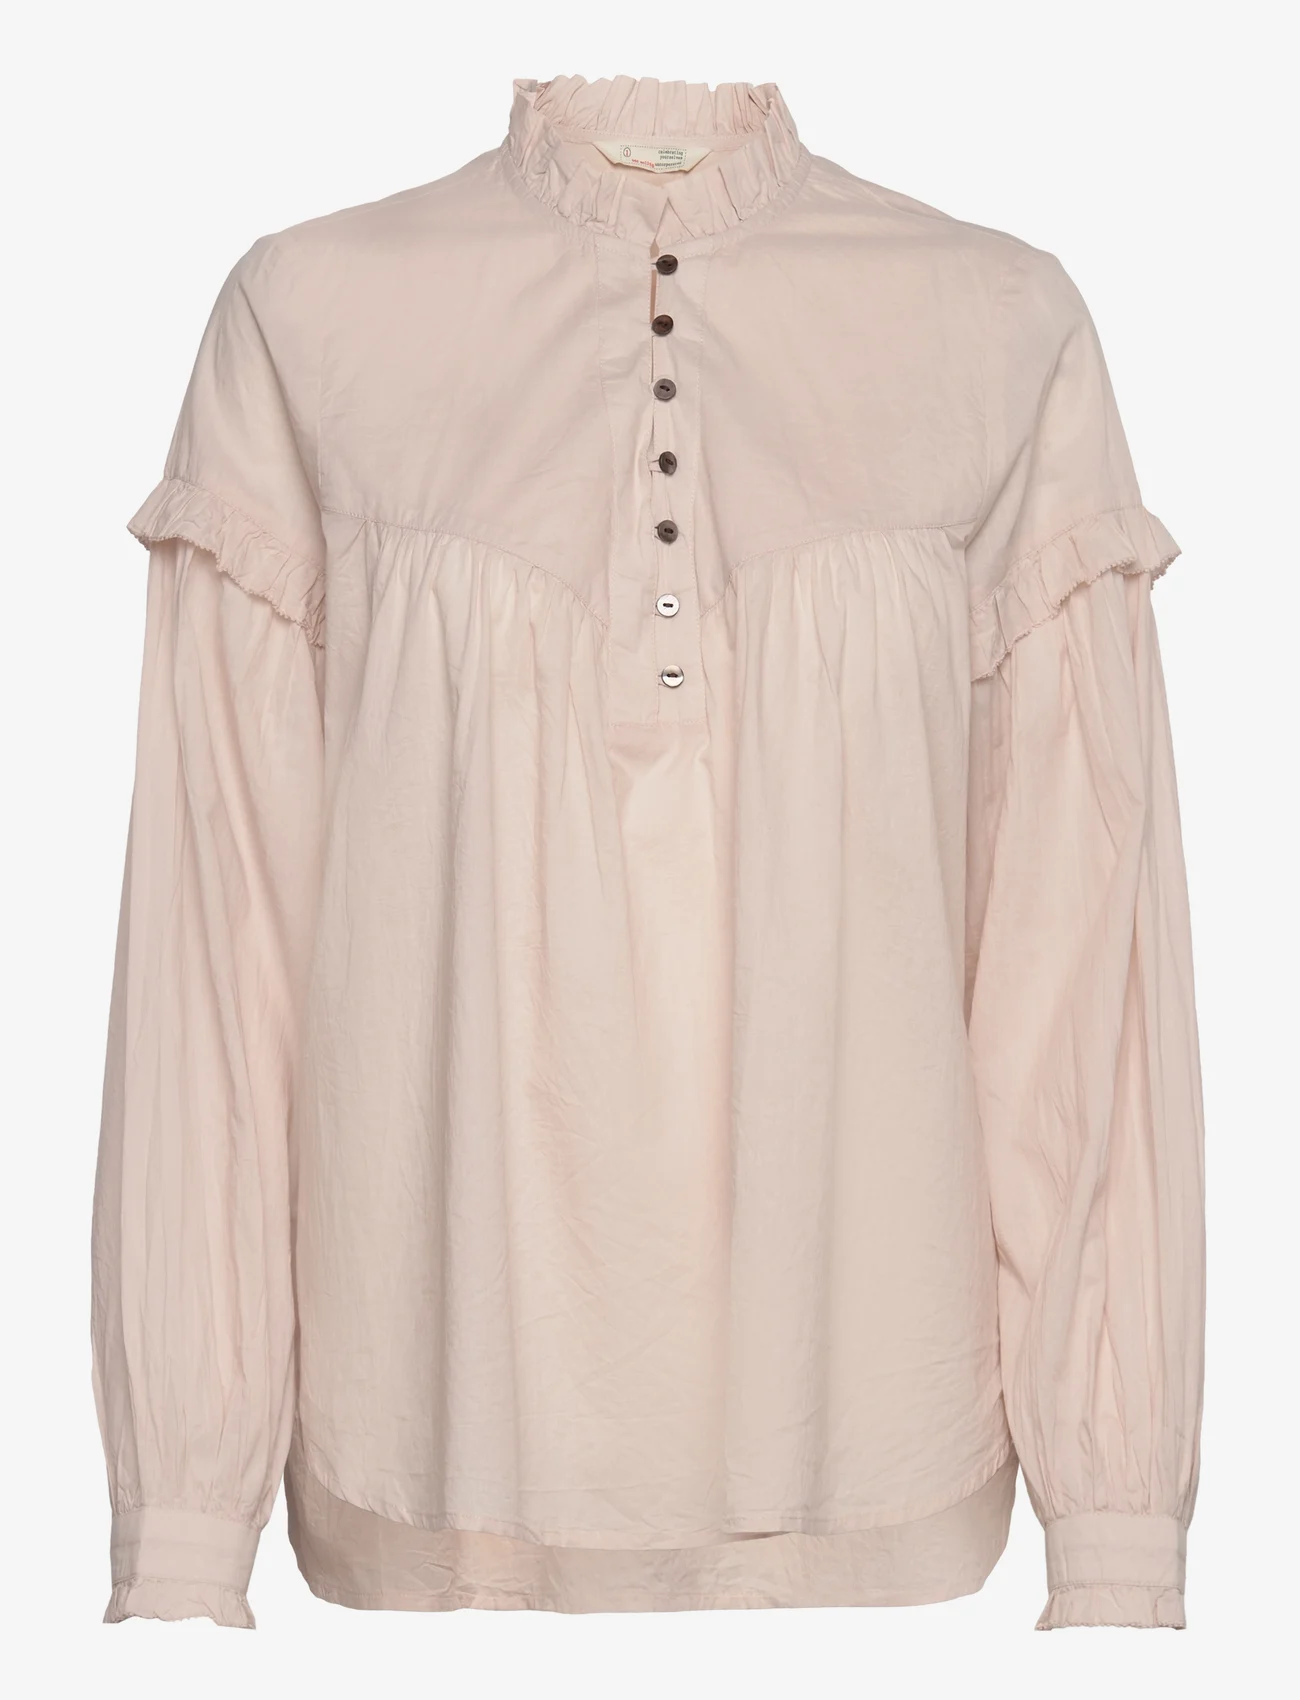 ODD MOLLY - Dana Blouse - long-sleeved blouses - golden porcelain - 0